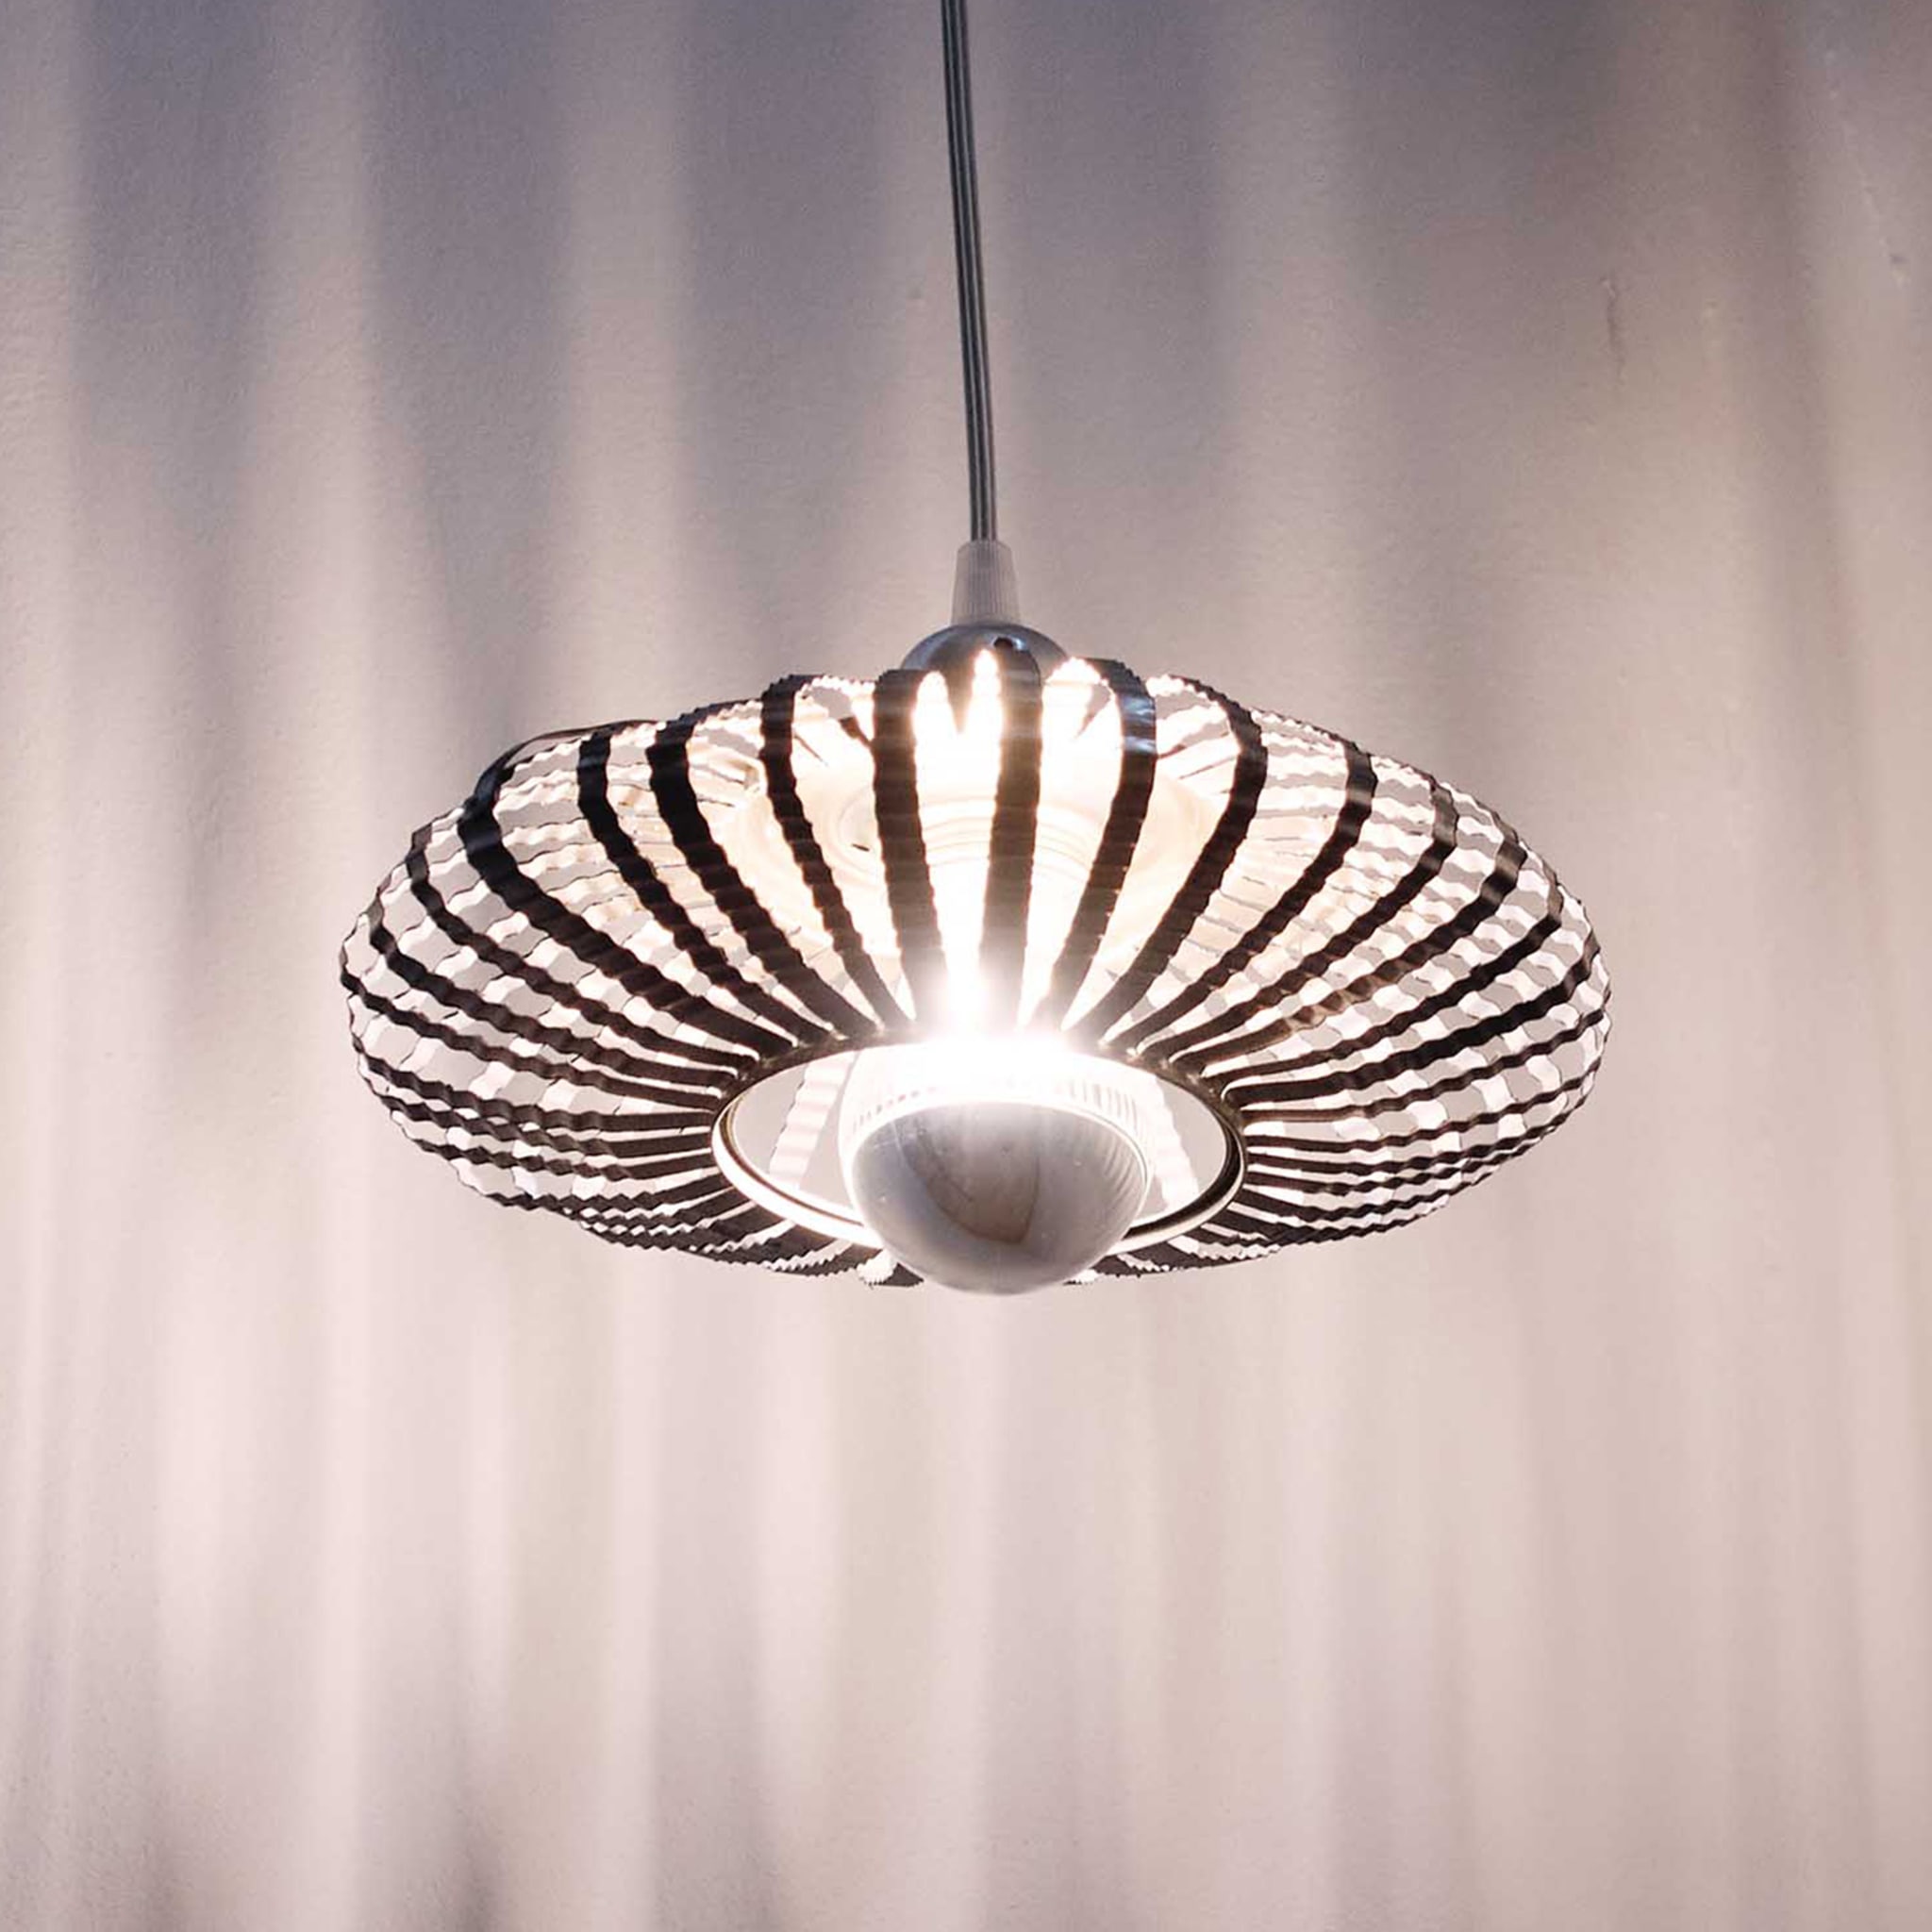 Celeste Pendant Lamp by Nadja Galli Zugaro - Alternative view 2